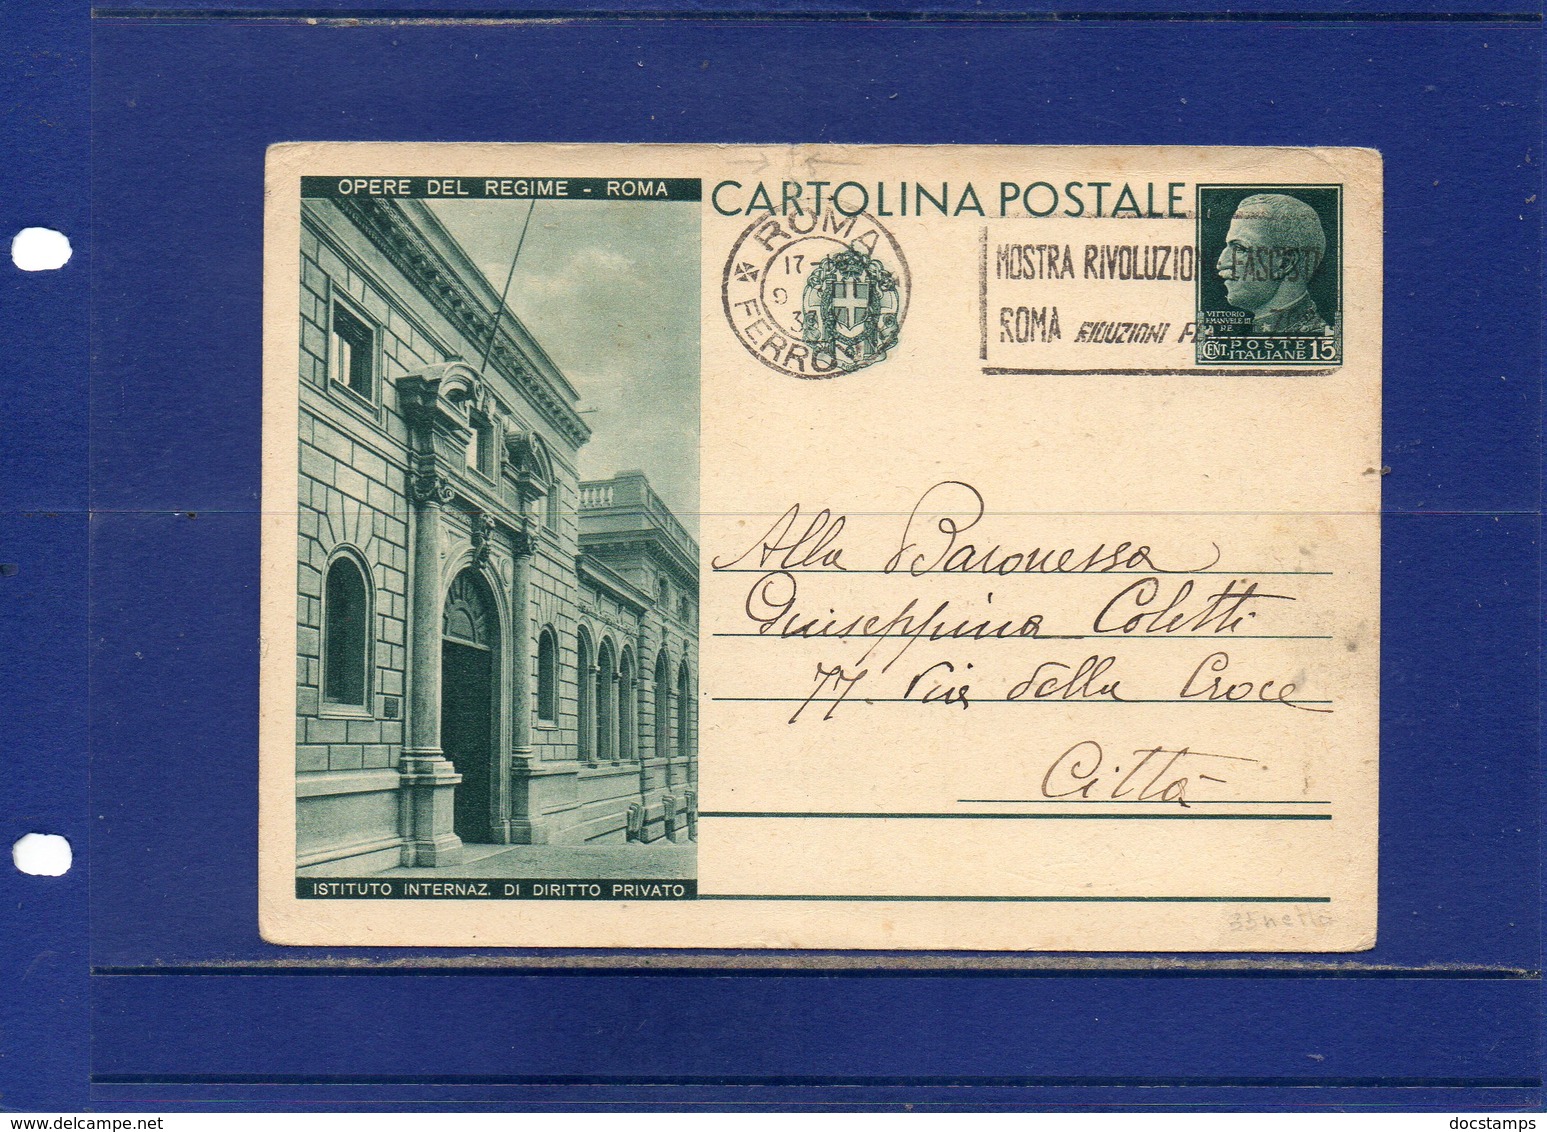 ##(DAN195)-1931-Cartolina Postale  Opere Del Regime Cent.15 Istituto Inter. Dirirro Privato  Cat. Filagrano C71/12 Usata - Stamped Stationery